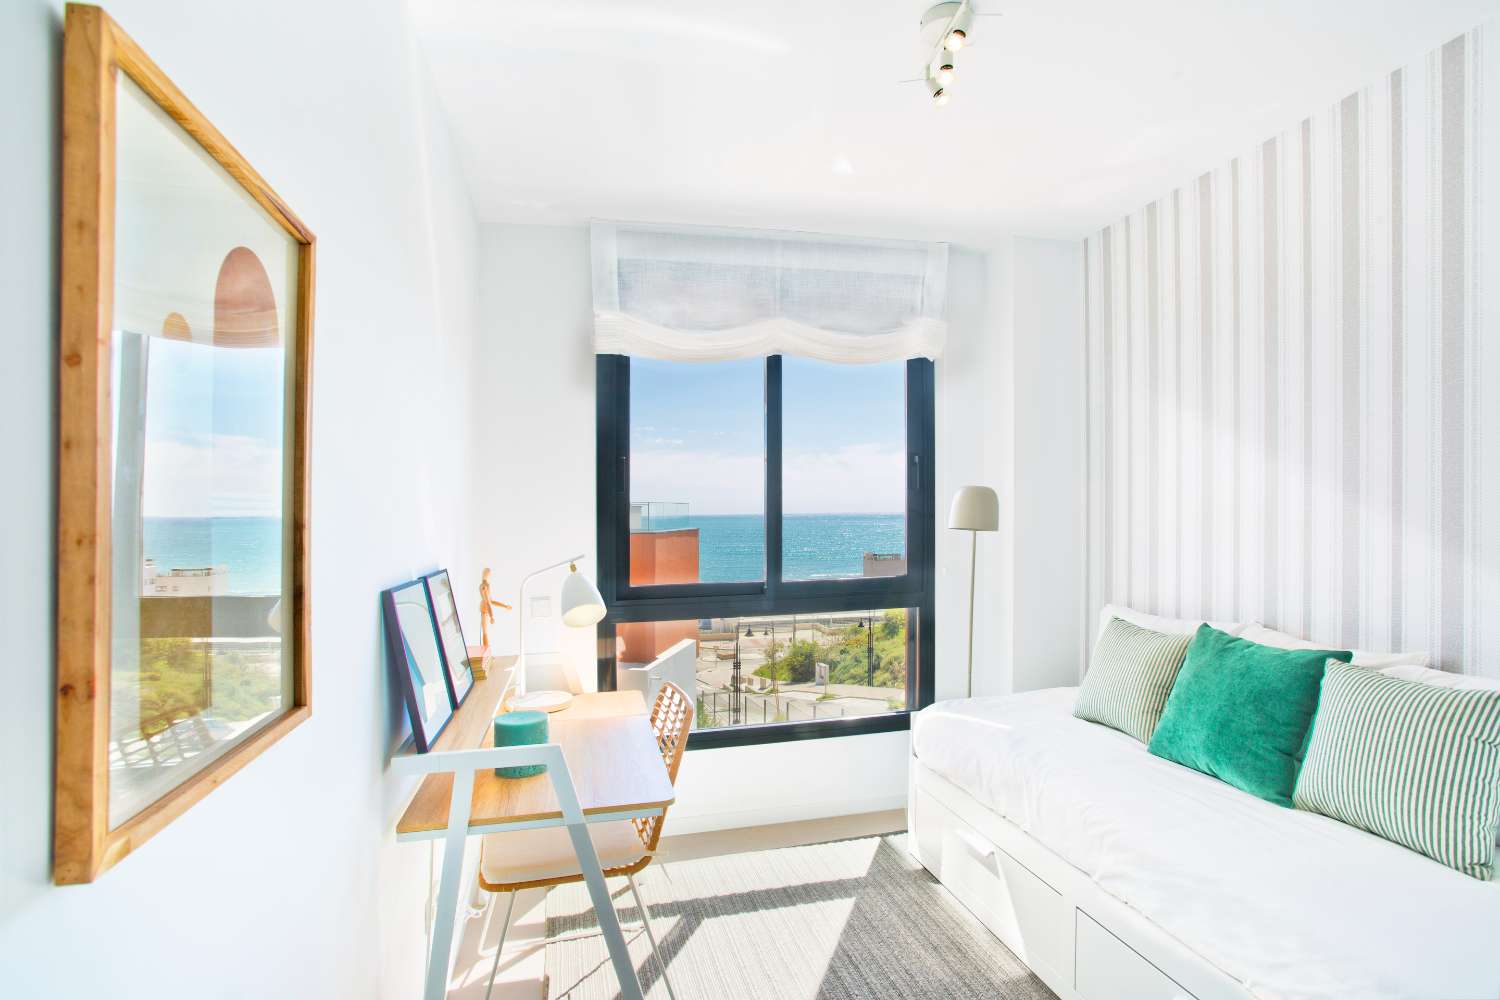 Amplio apartamento de 3 dormitorios en ubicación privilegiada  a pocos minutos de la playa con terraza de 62 m2